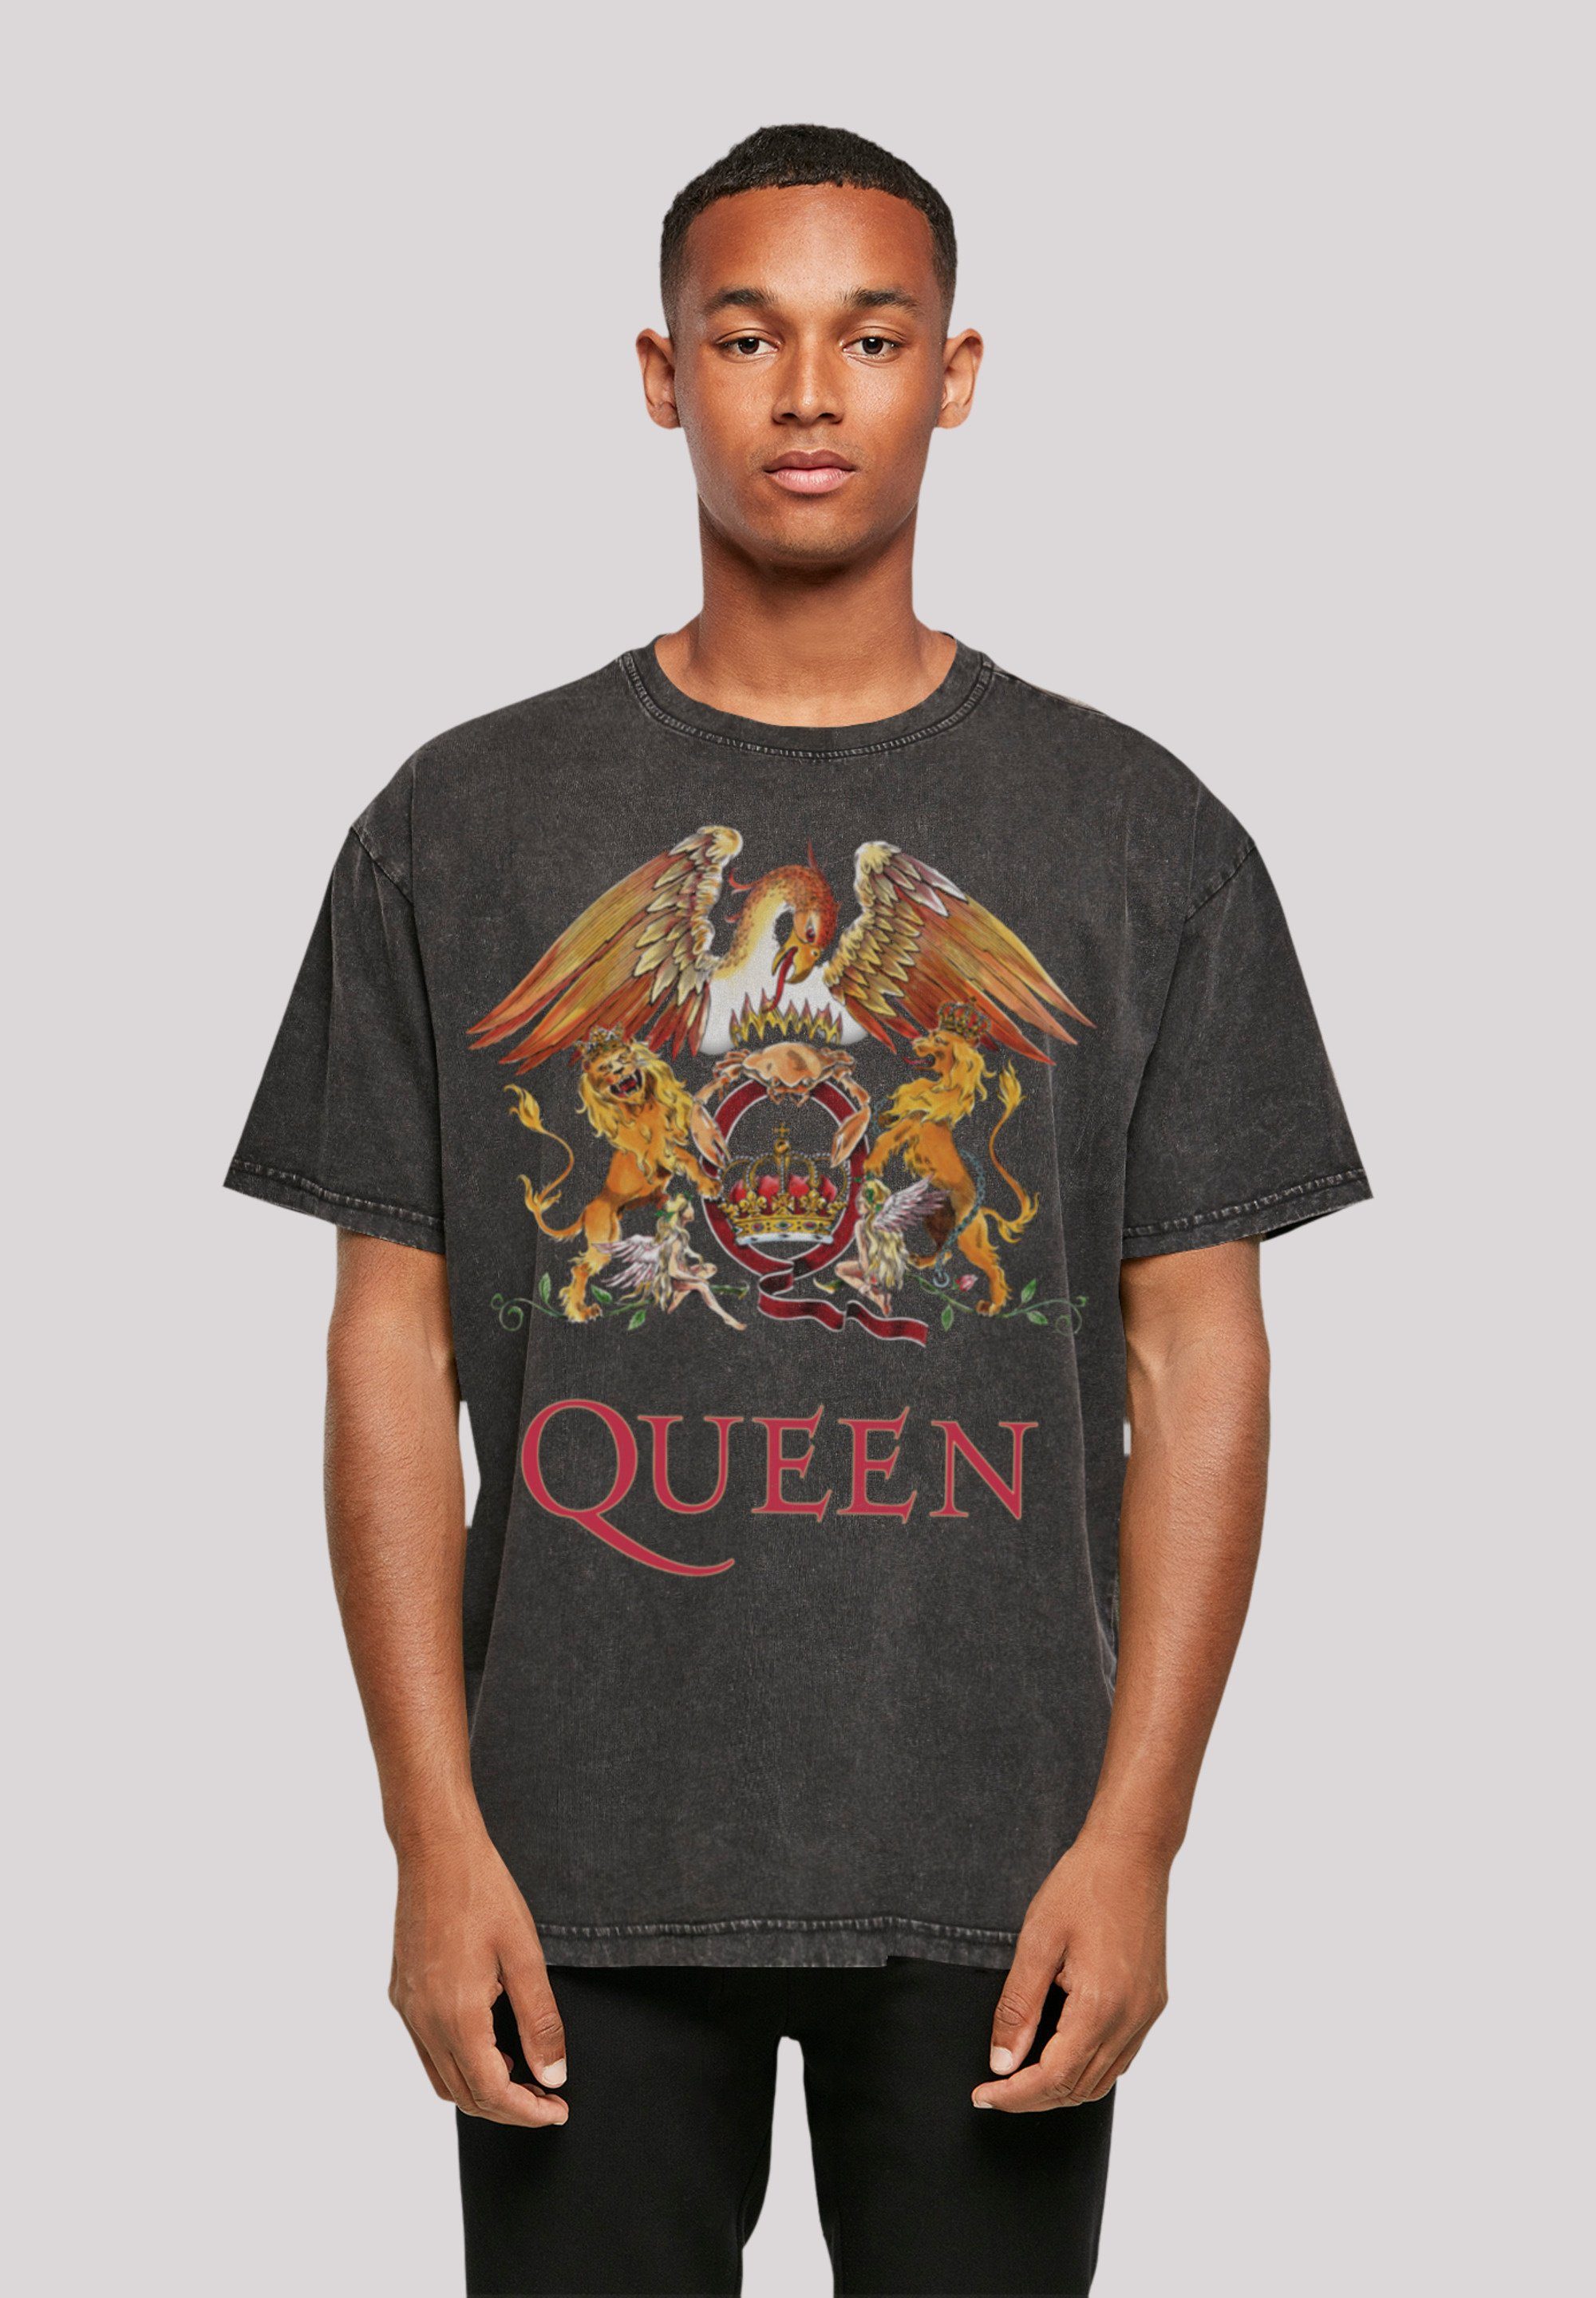 Das 180 ist Print, Queen Crest F4NT4STIC cm groß Classic M Größe Model und T-Shirt trägt